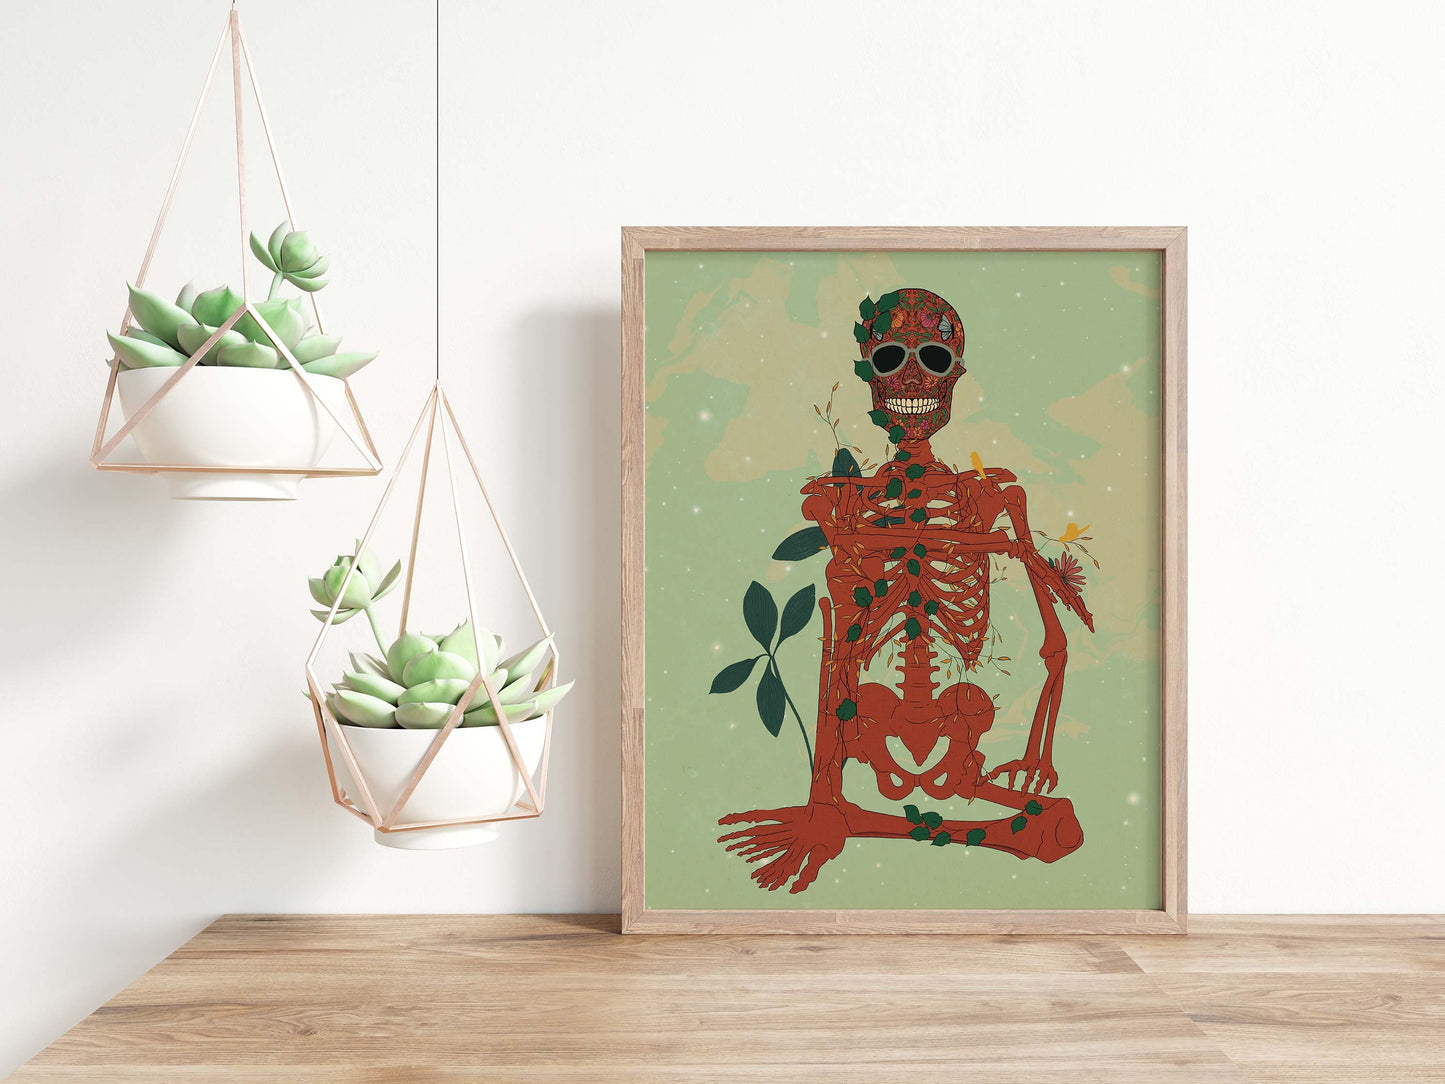 SKeleton Art Poster, Skeleton Wall Art, Skeleton Print